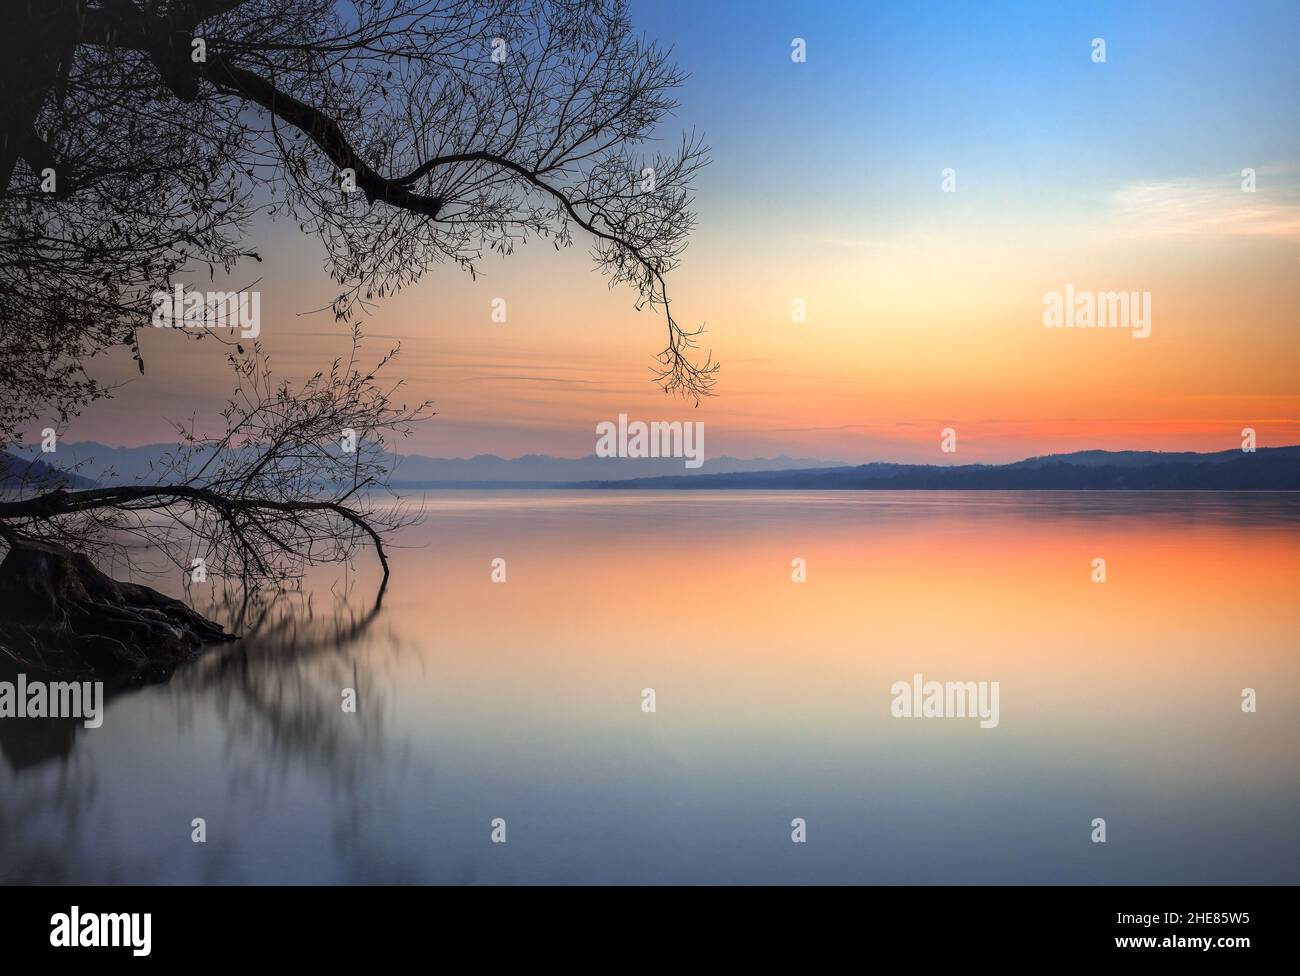 Sunset, twilight at Lake Starnberg, Bavaria, Germany Stock Photo